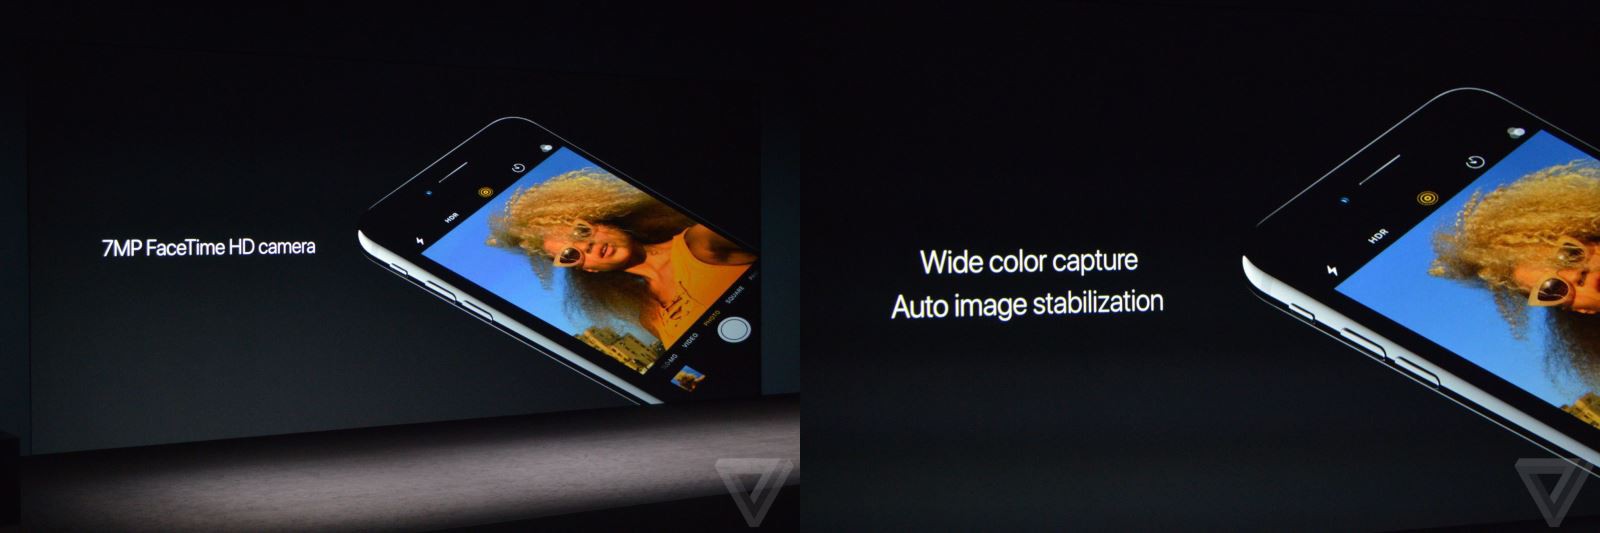 Camera trước của iPhone 7 & iPhone 7 Plus được nâng cấp độ phân giải và chất lượng ảnh